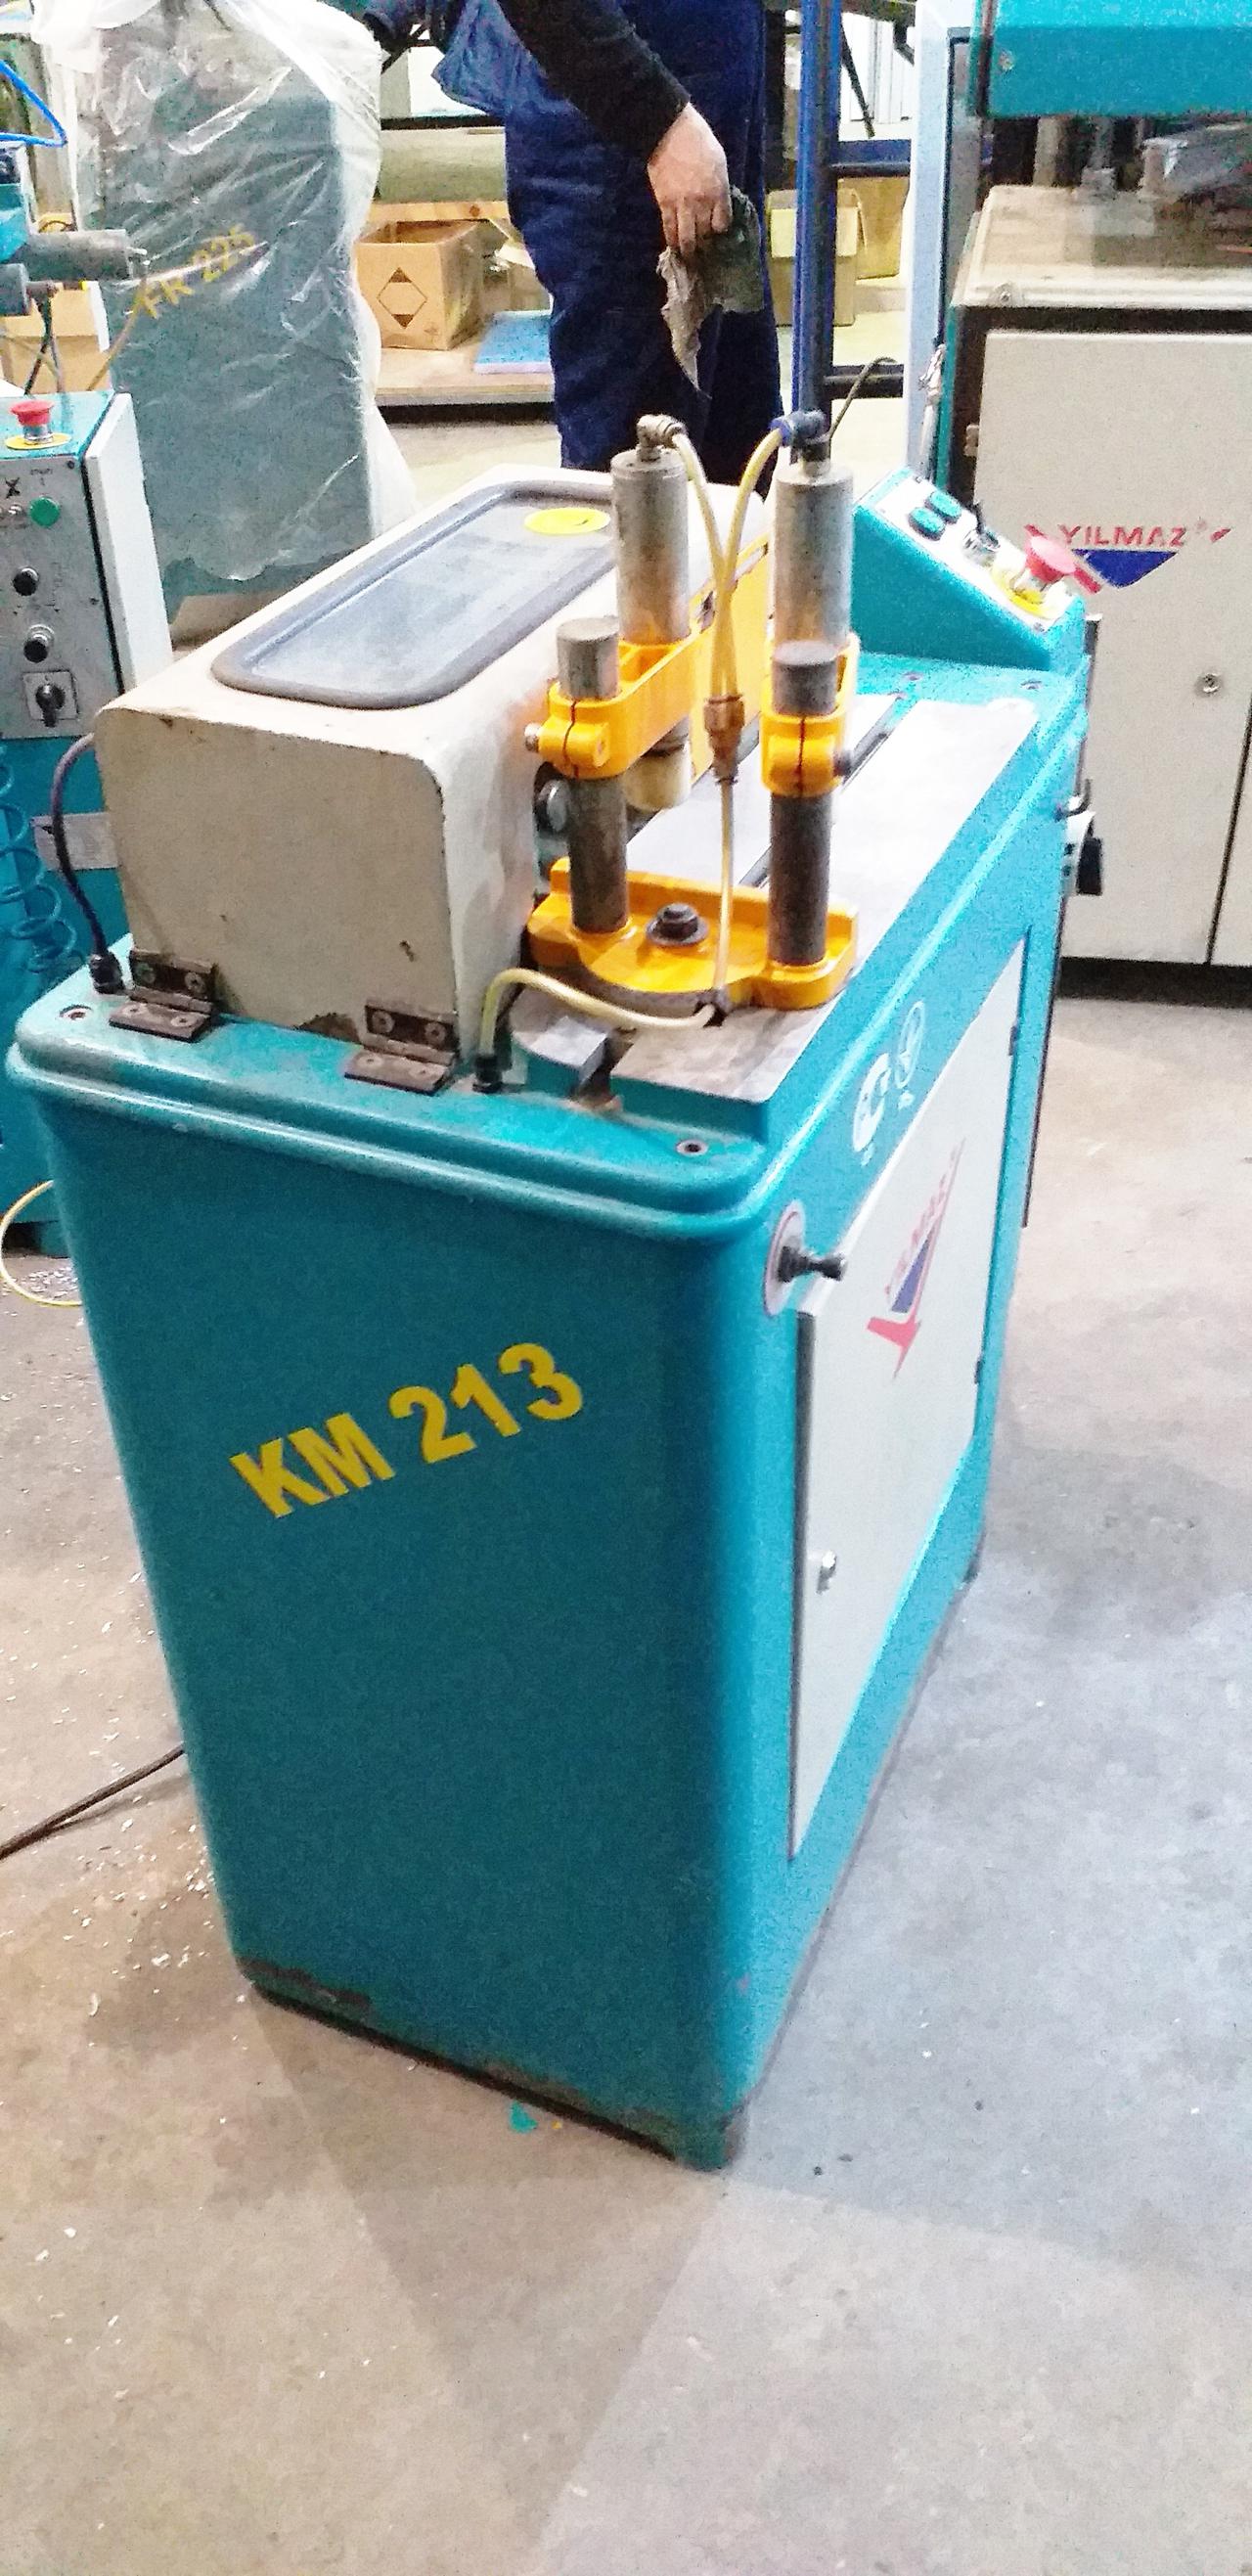 YILMAZ KM 213 S Станок для обработки алюминиевого импоста с охлаждением (Б/У оборудование)